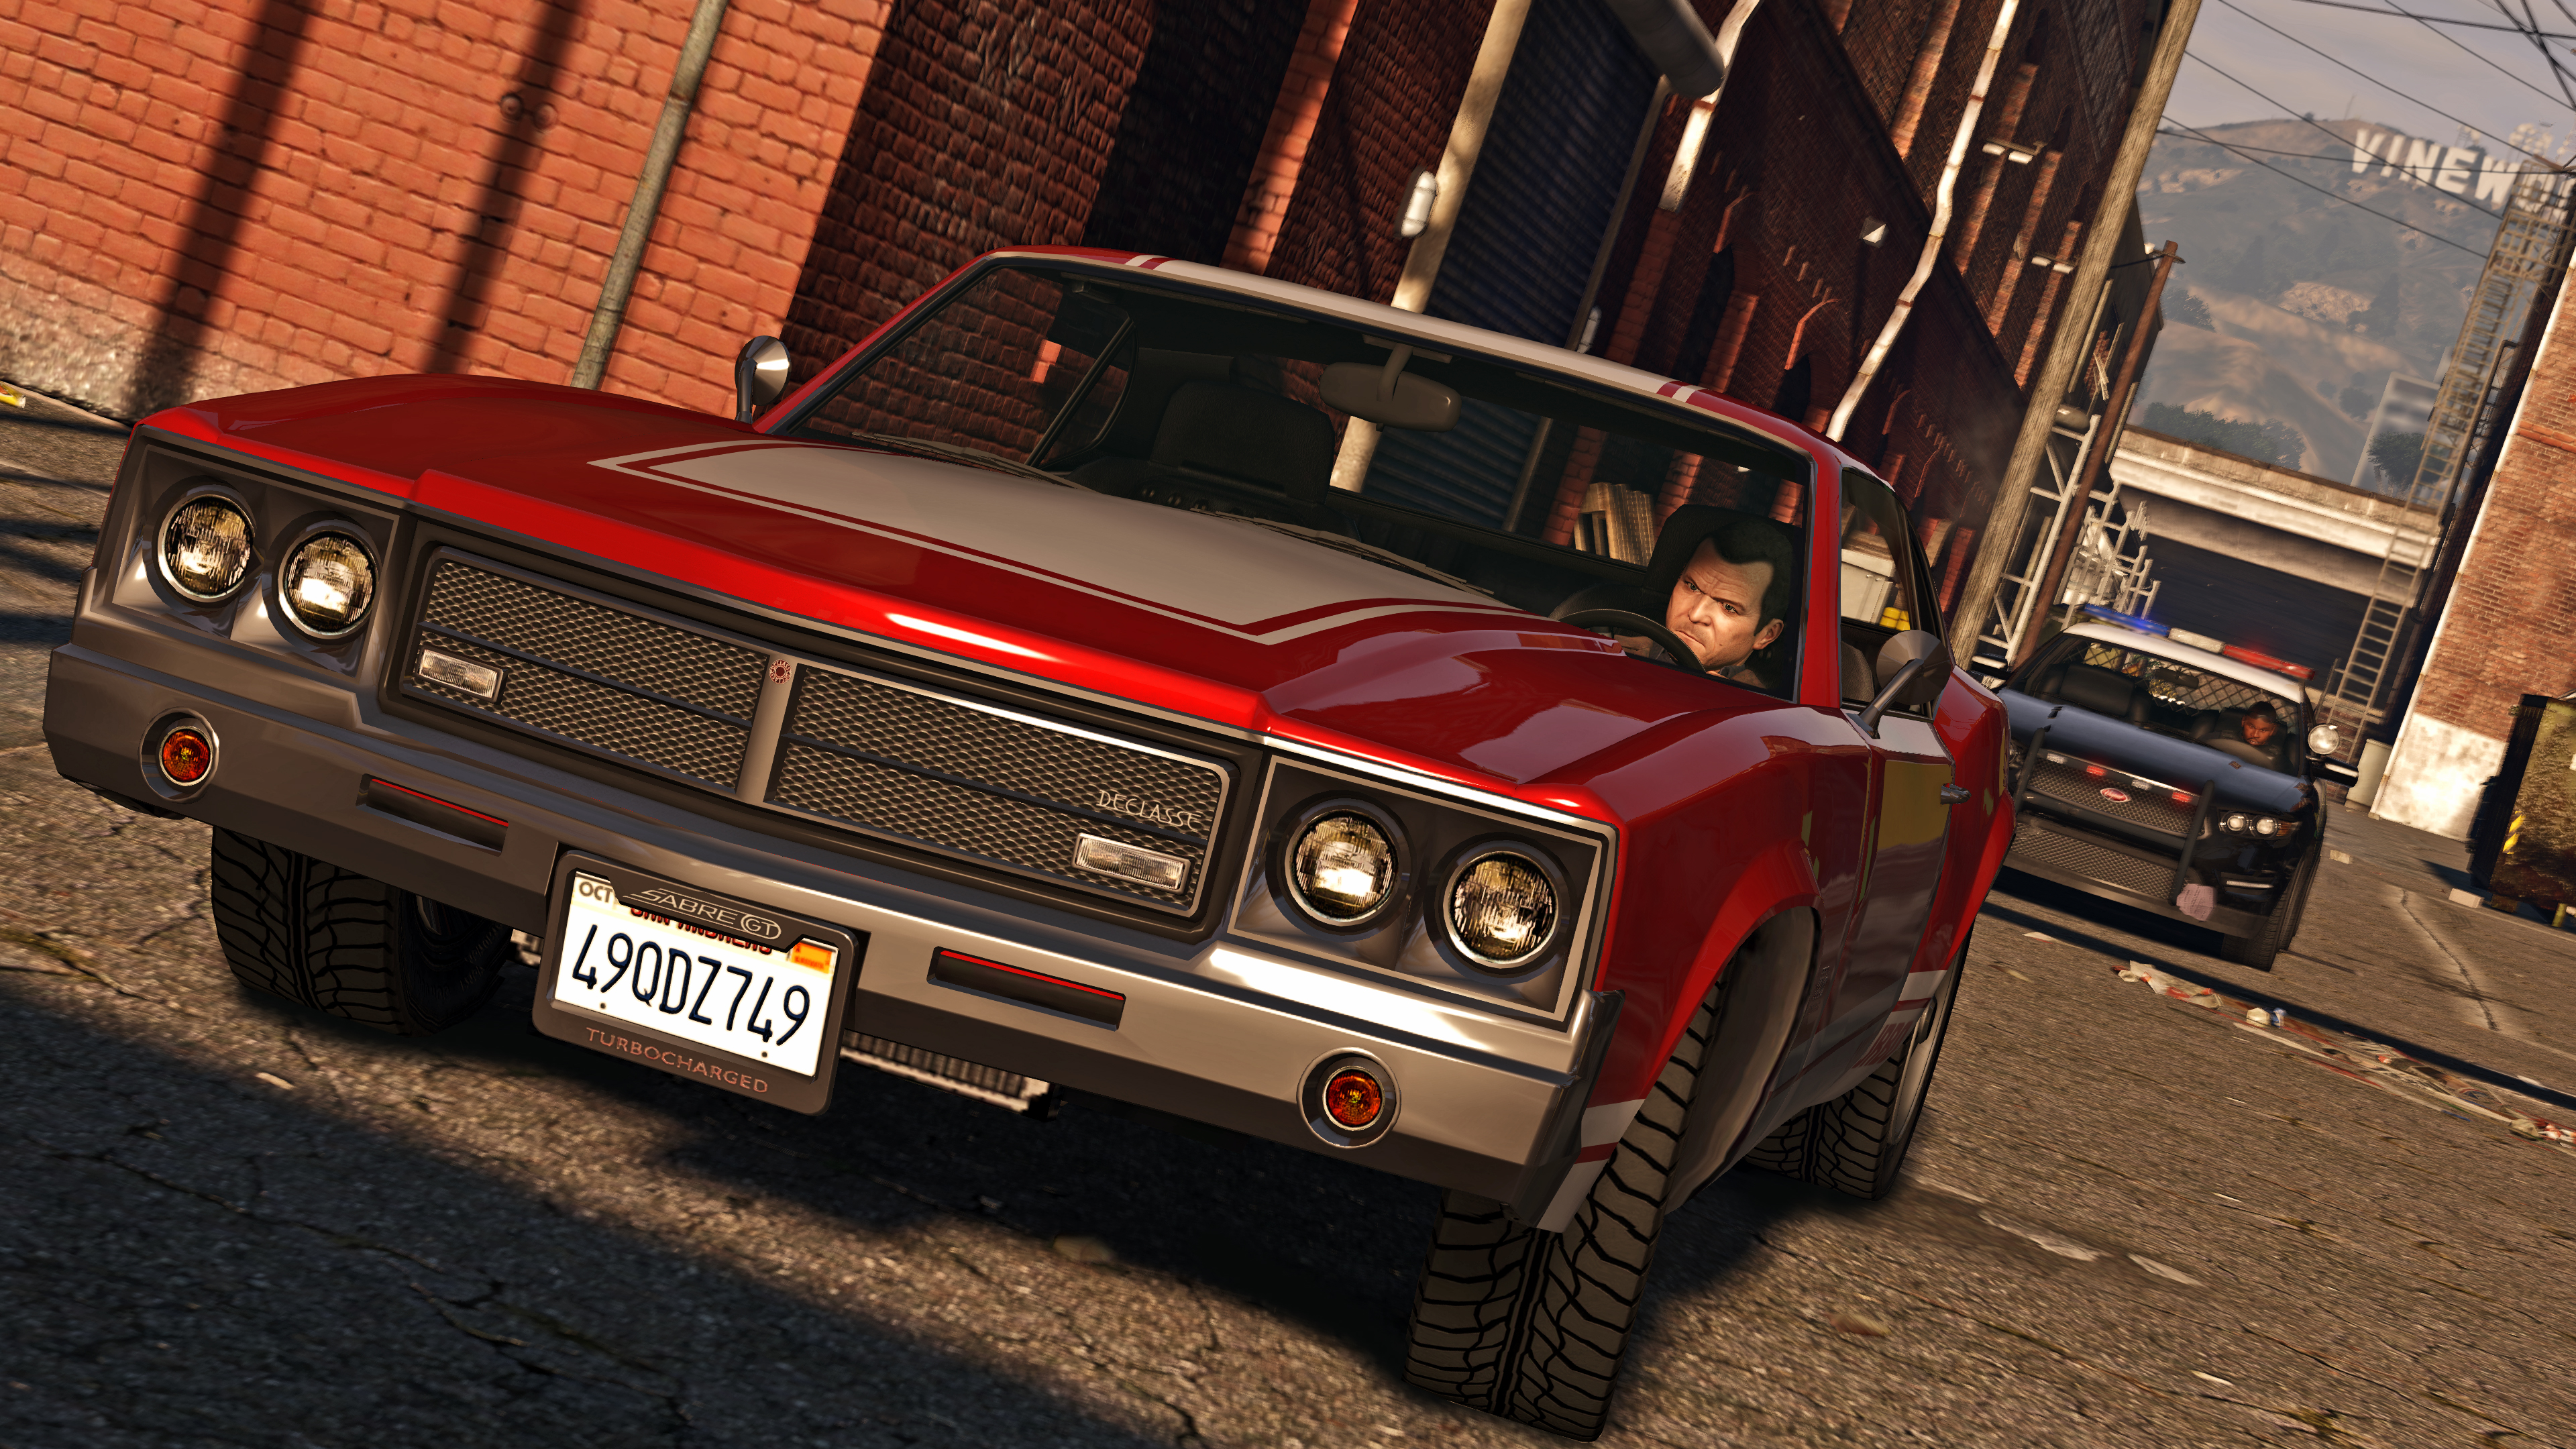 Grand Theft Auto V - HD Wallpaper 